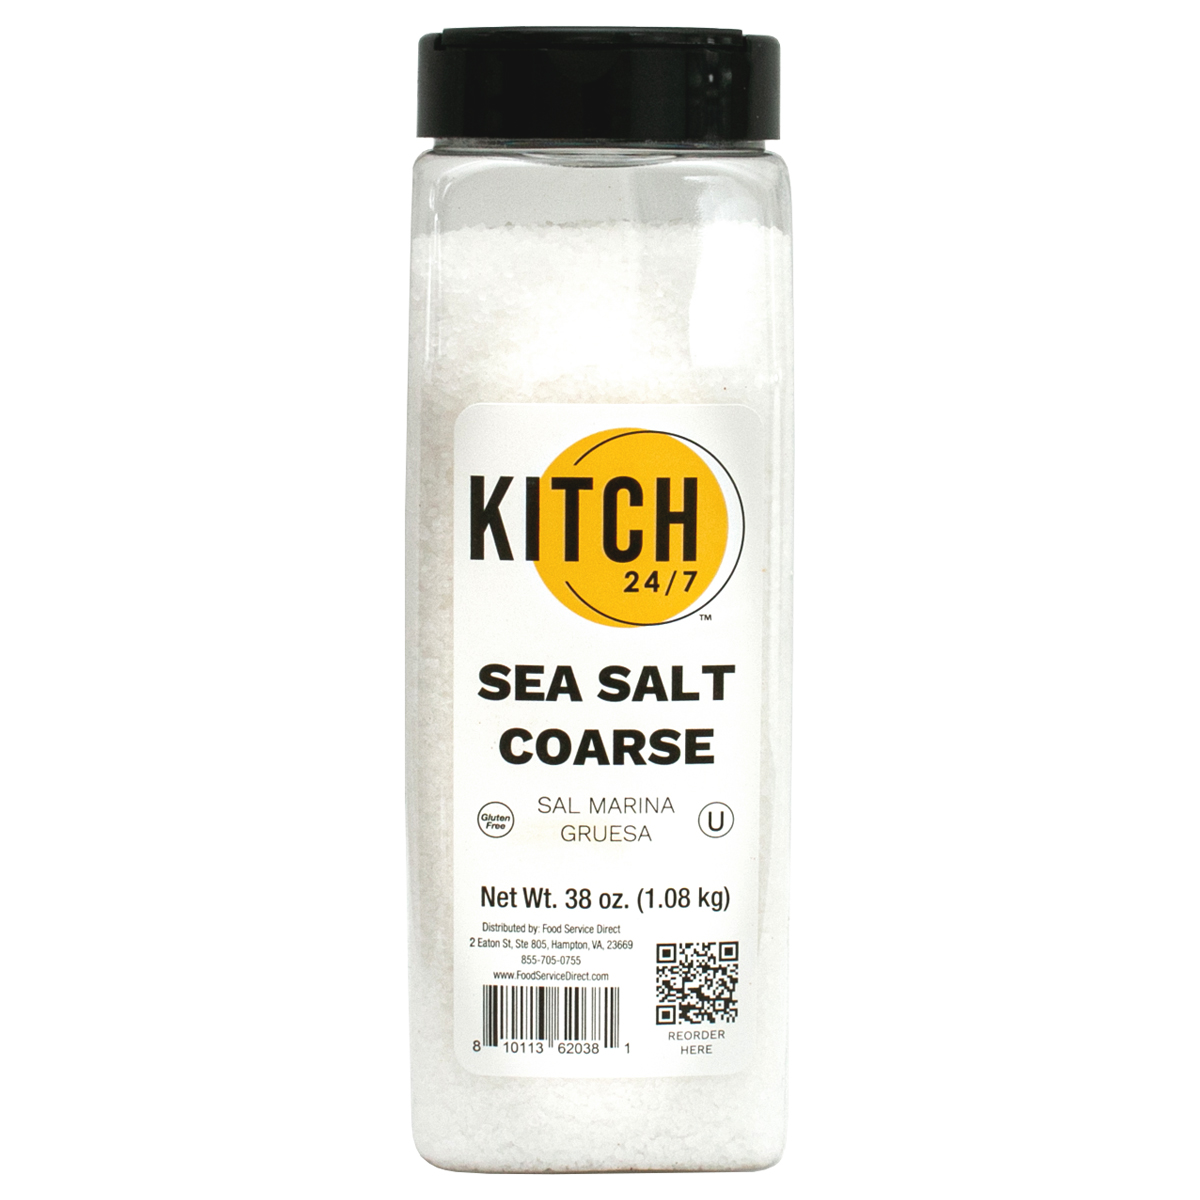 KITCH 24/7 Coarse Sea Salt, 38 Ounce